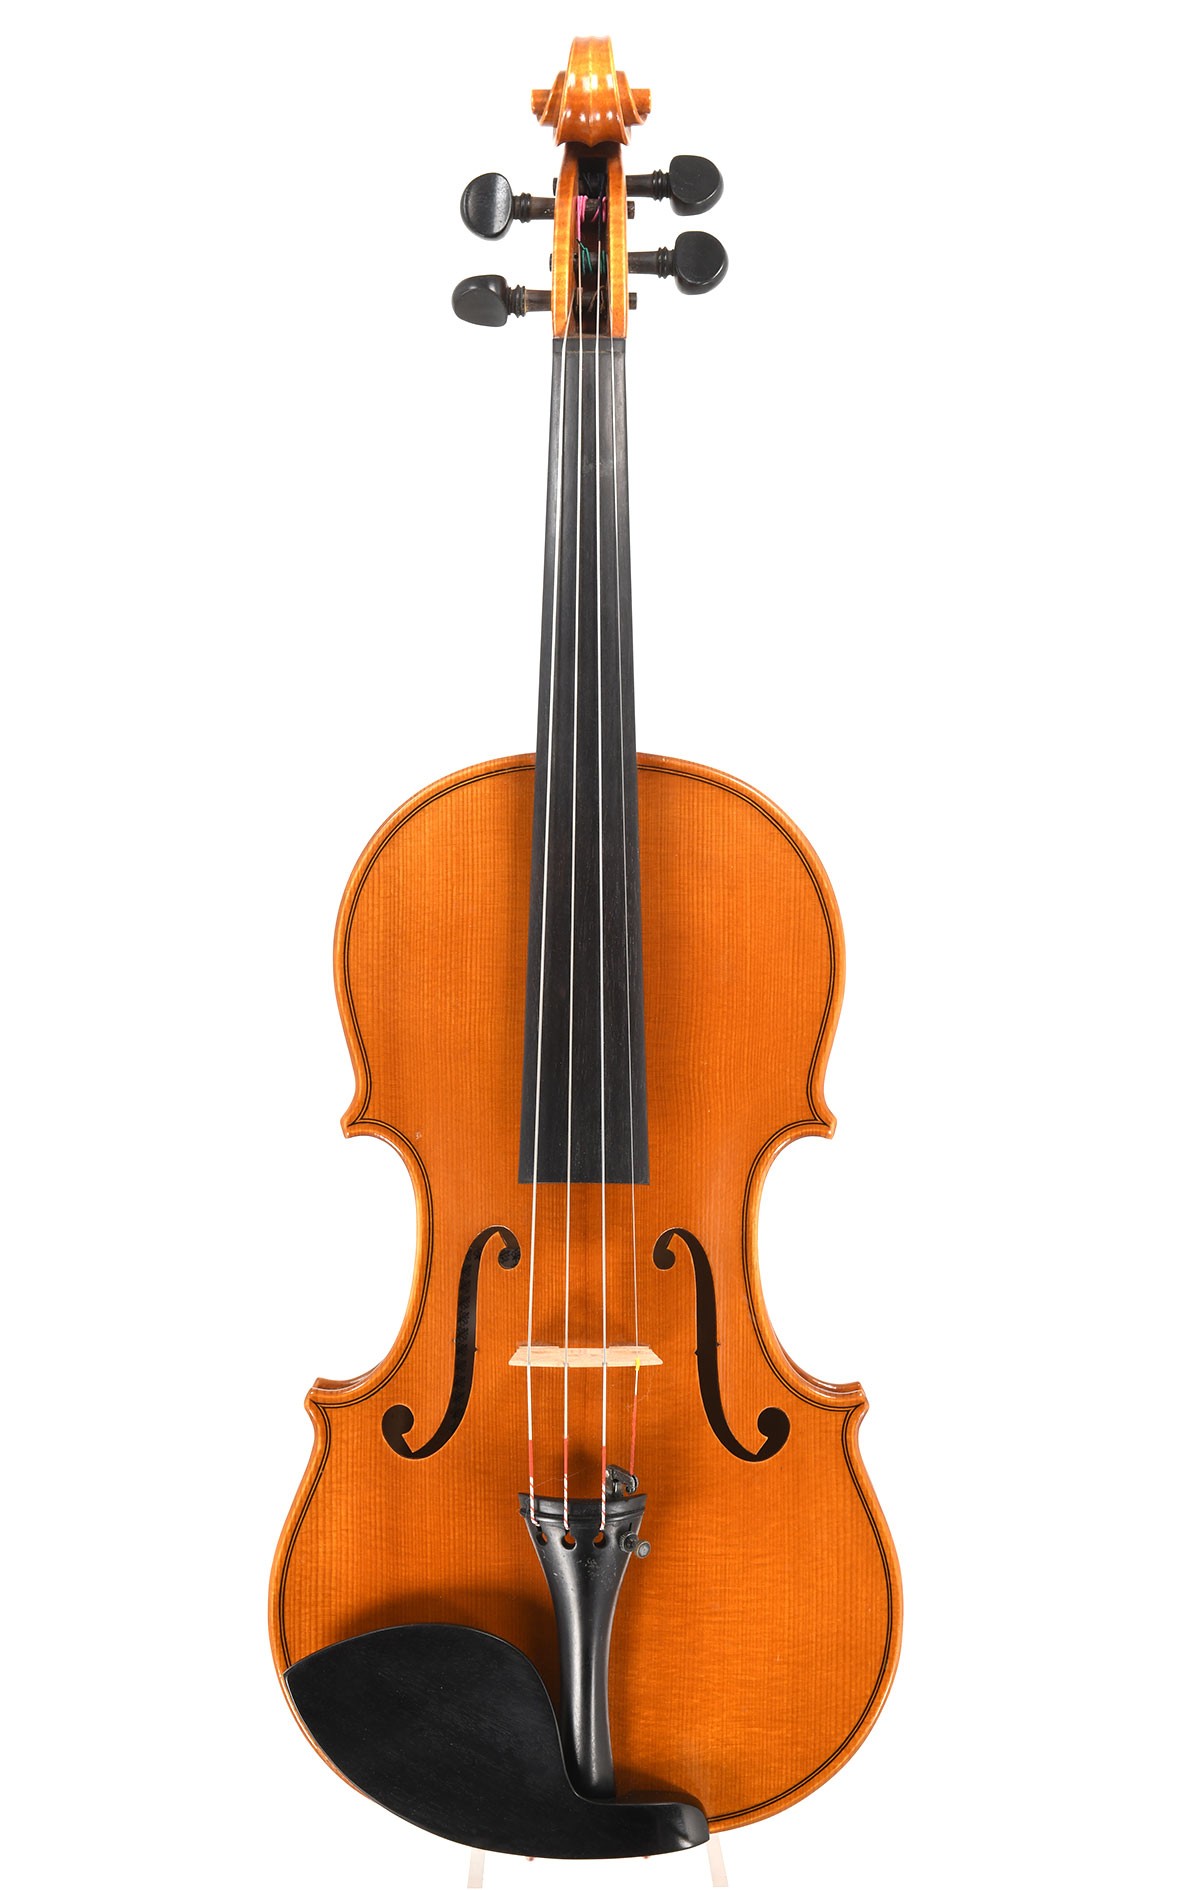 SALE Französische Violine der Marke "Nicolas Mansuy" aus dem Atelier von Jean-Jacques Pages